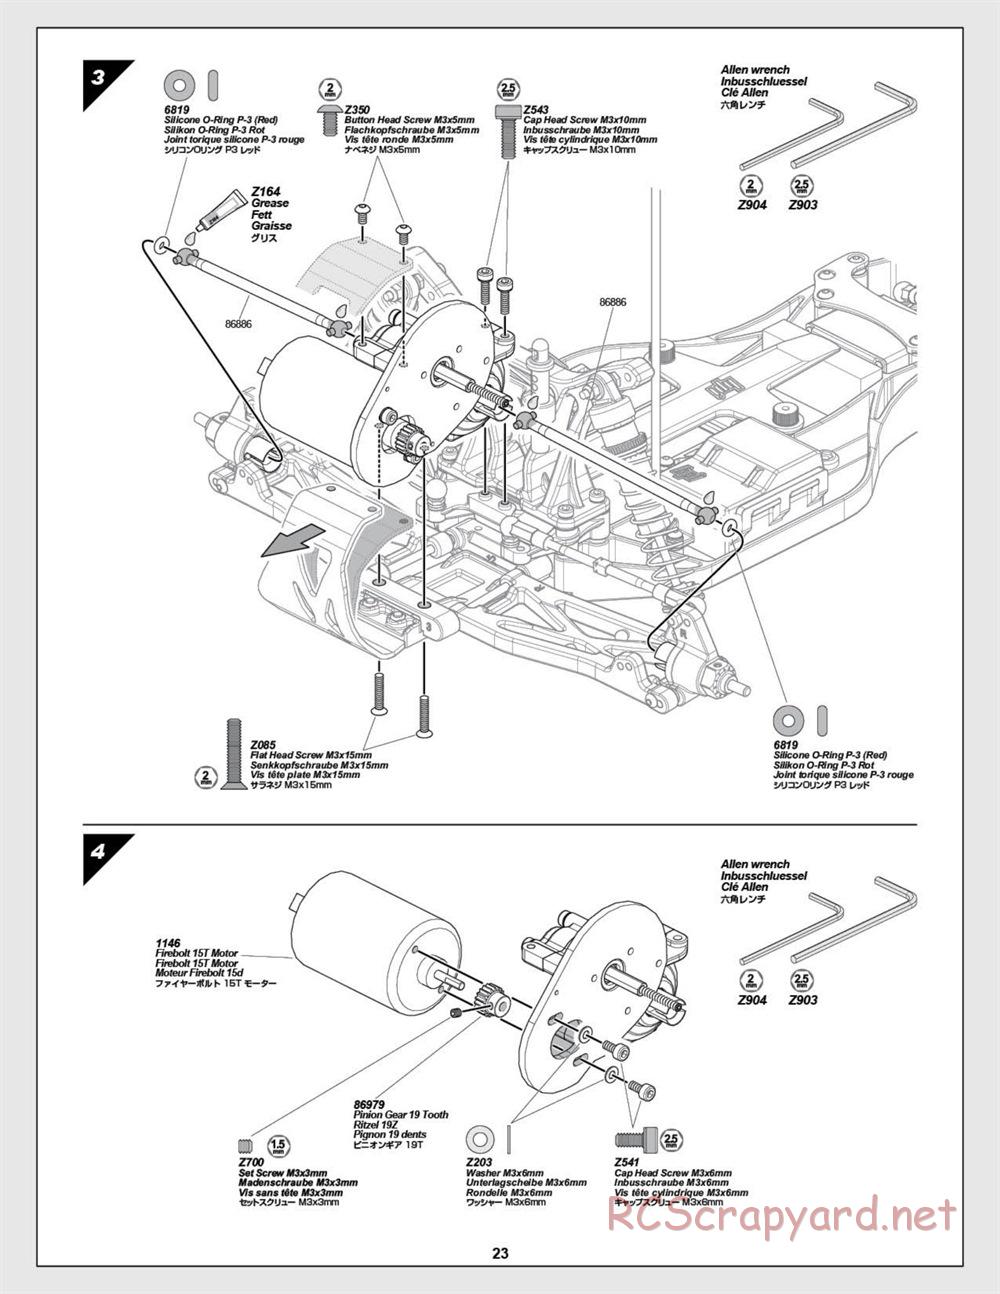 HPI - E-Firestorm-10T - Manual - Page 23